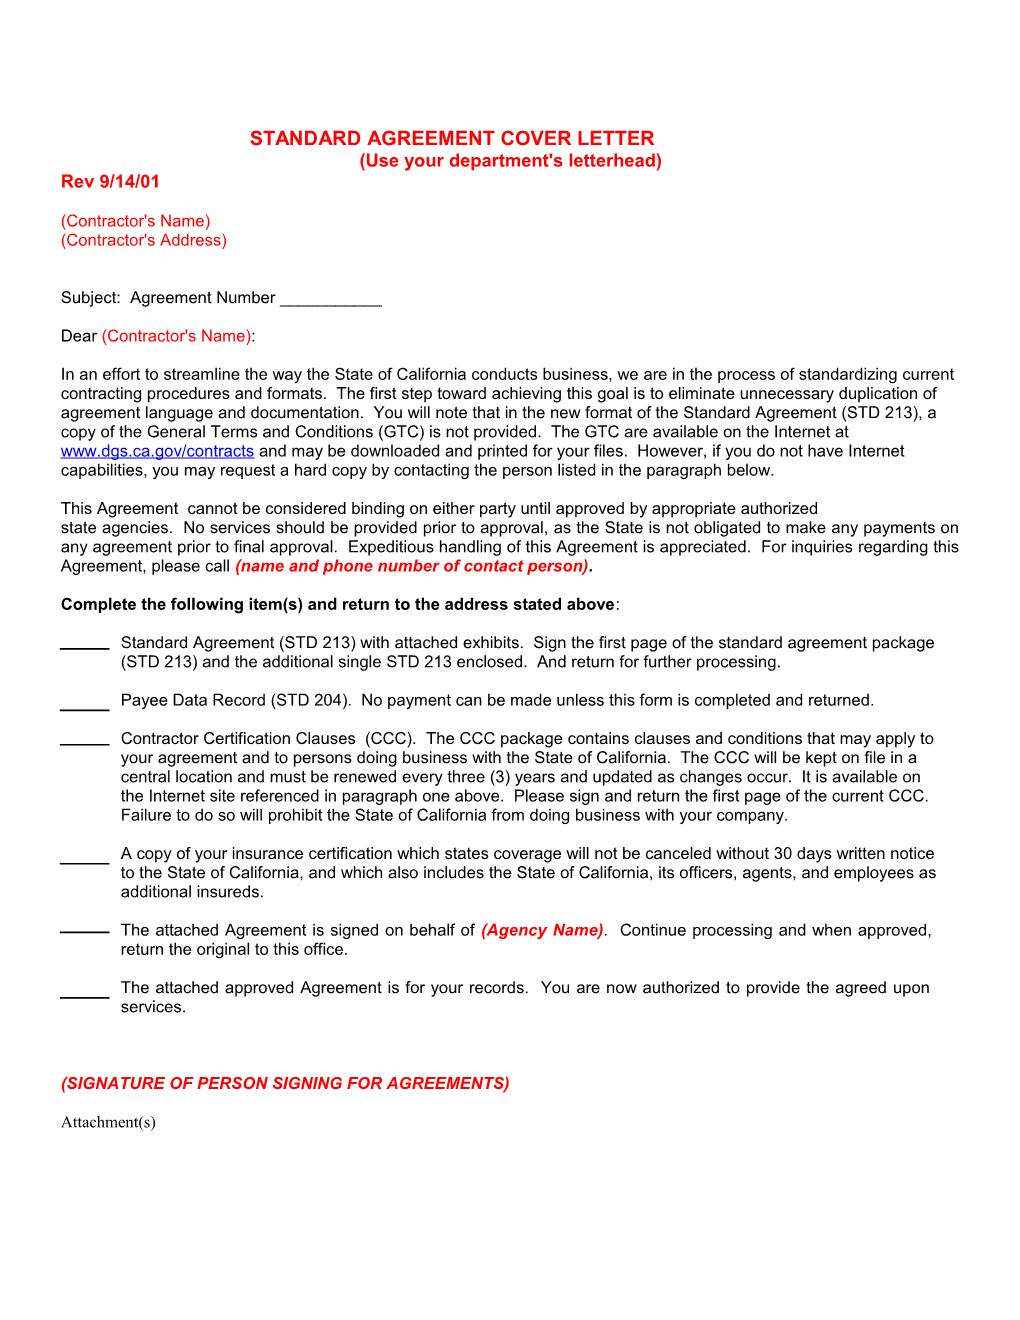 Standard Agreement Cover Letter